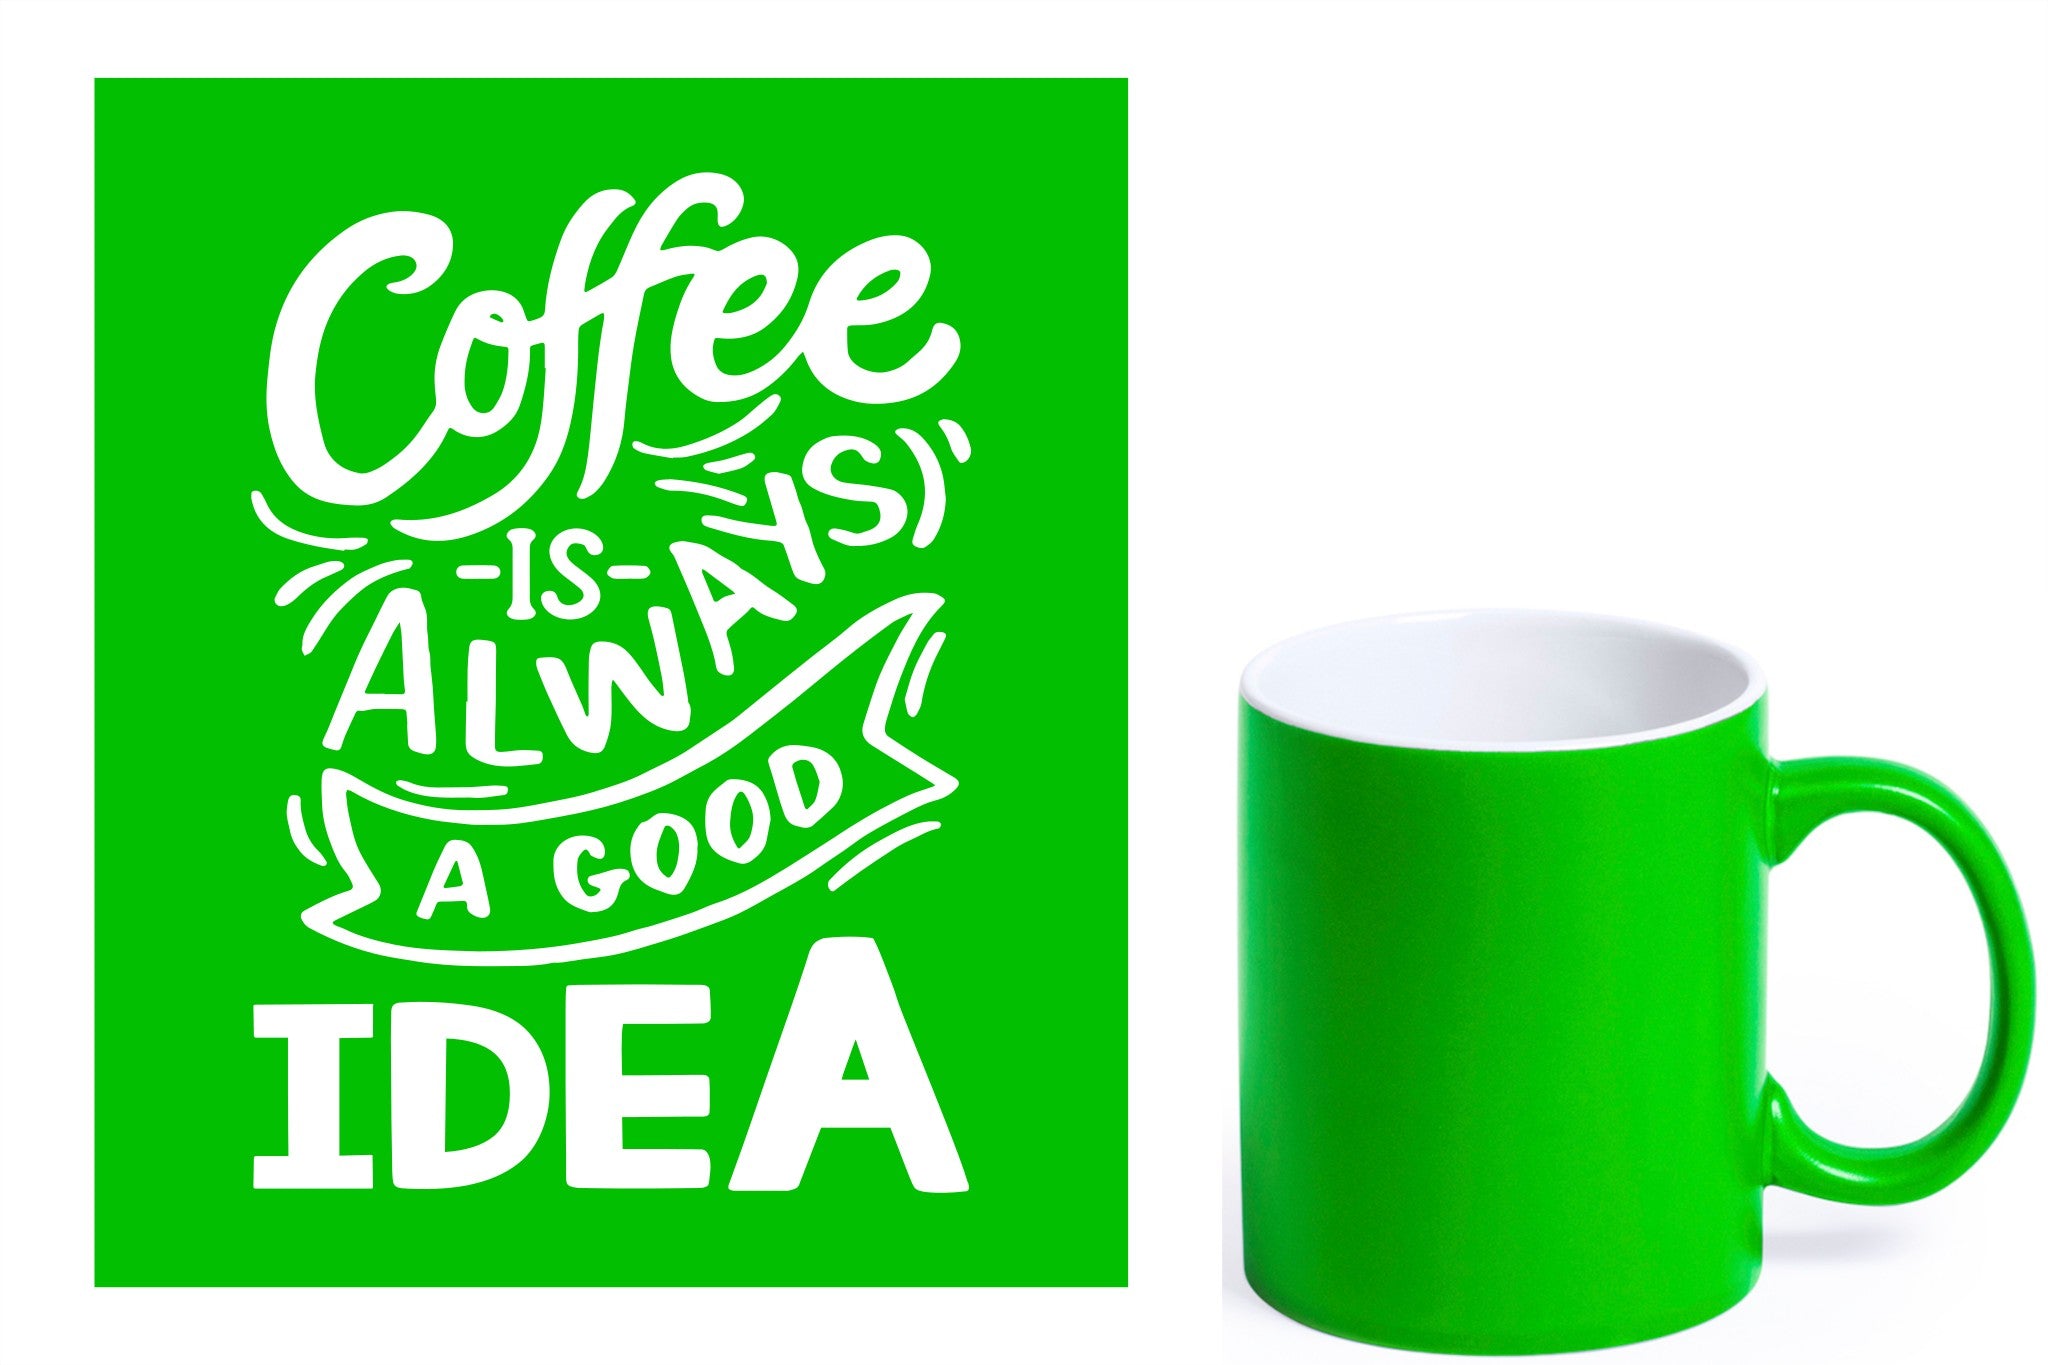 groene keramische mok met witte gravure  'Coffee is always a good idea'.